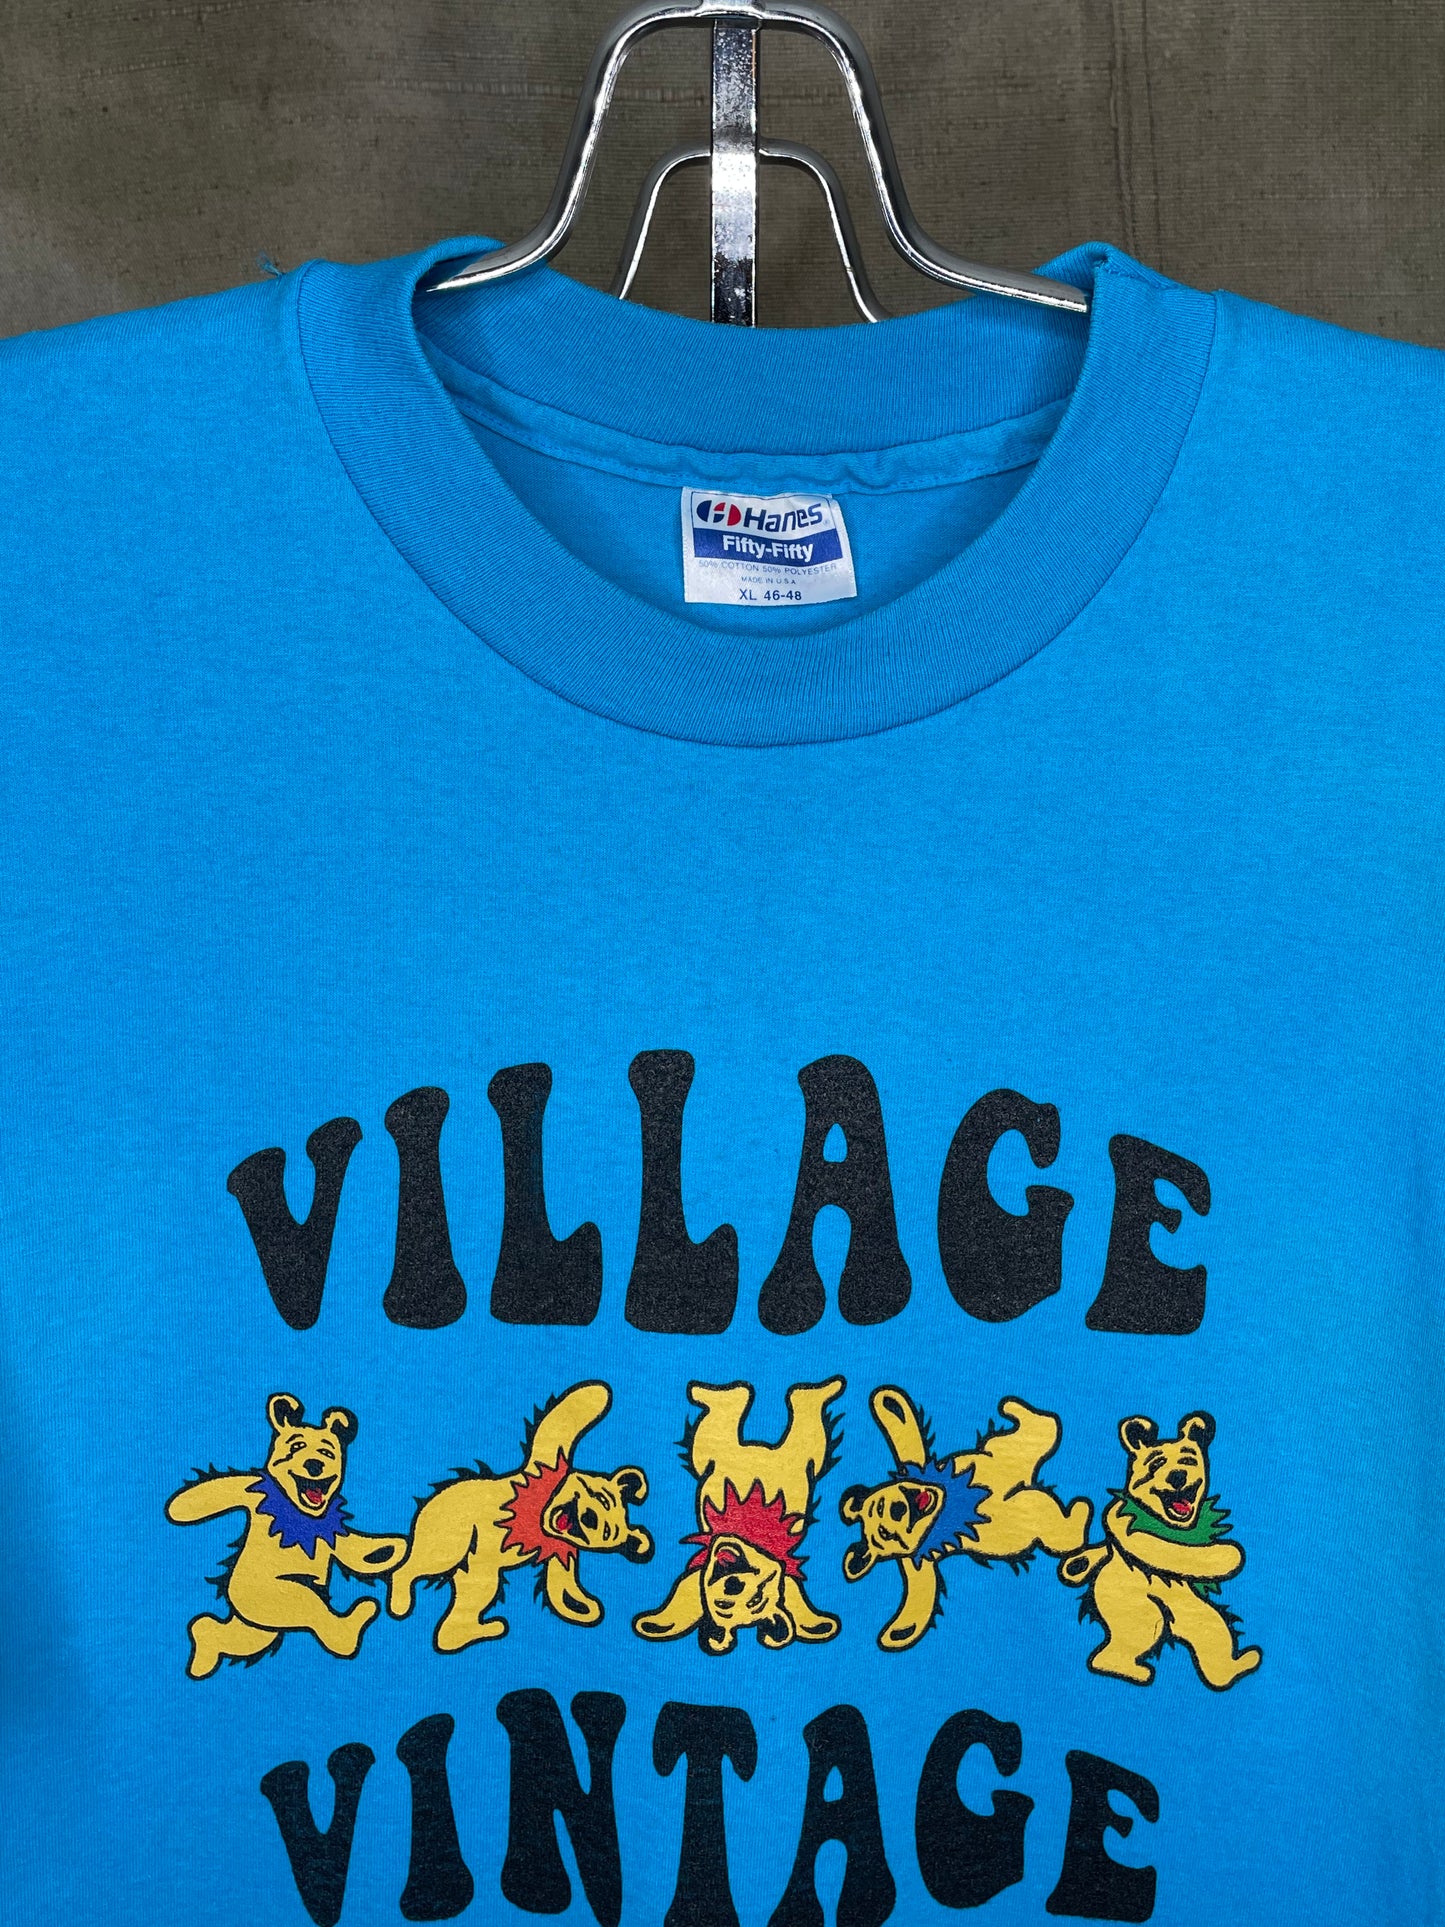 Village Vintage Frolicking Bear Logo on Hand Sourced Vintage Blank Shirt L/XL